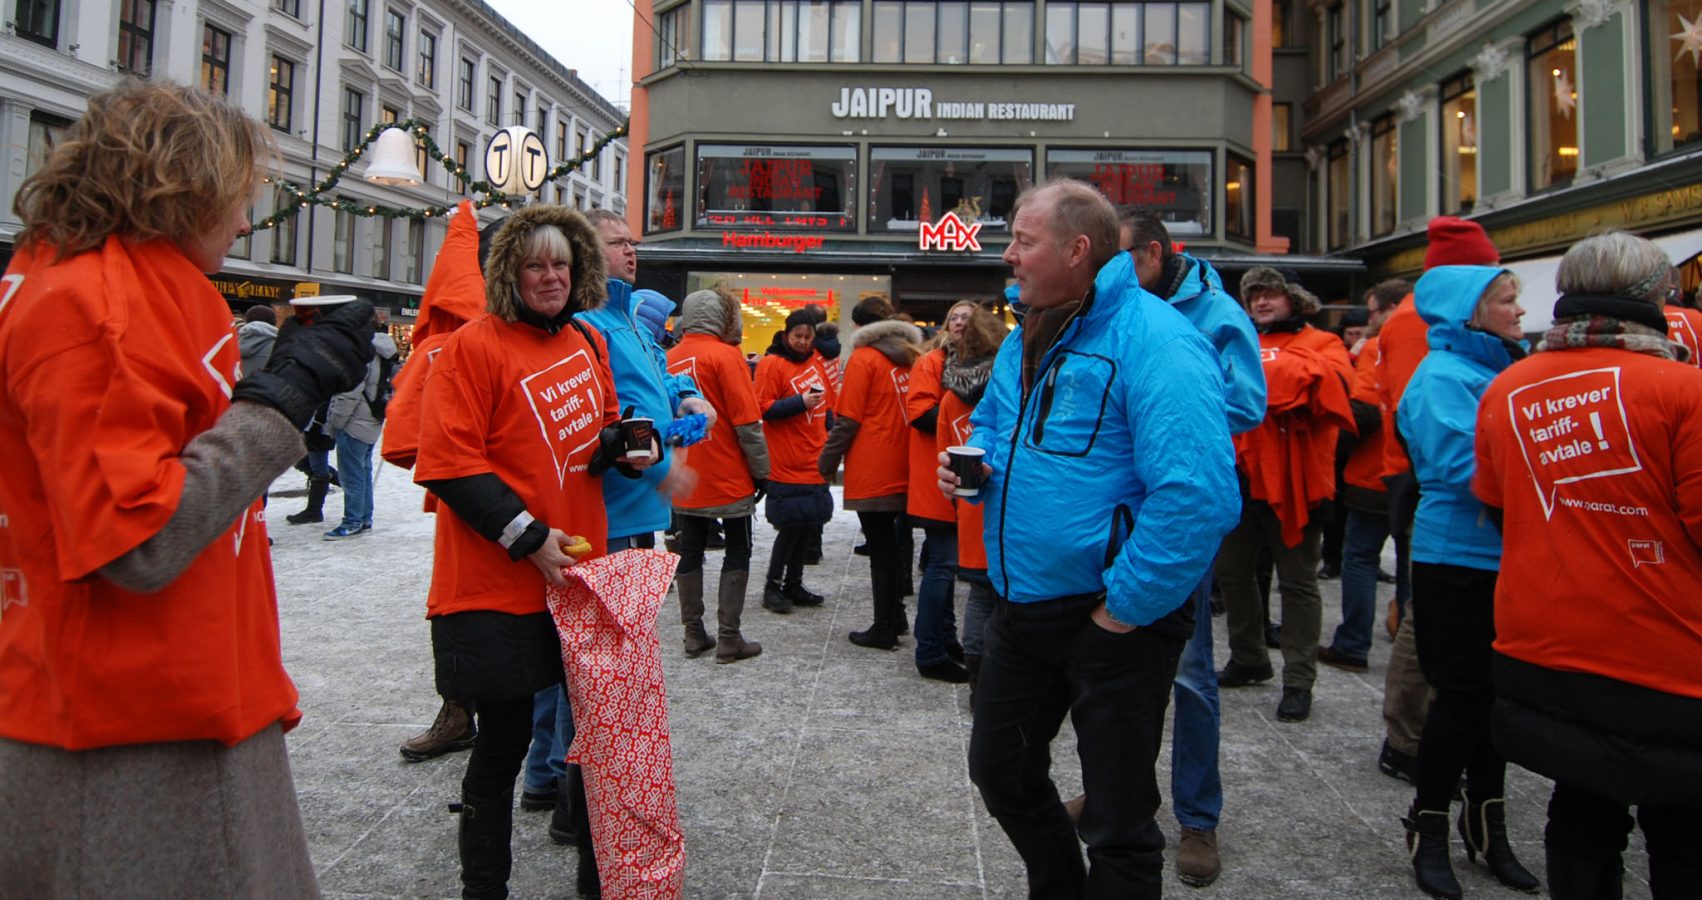 Mennesker med orane tskjorter med påskriften Vi krever tariffavtale er samlet på Egertorget i Oslo